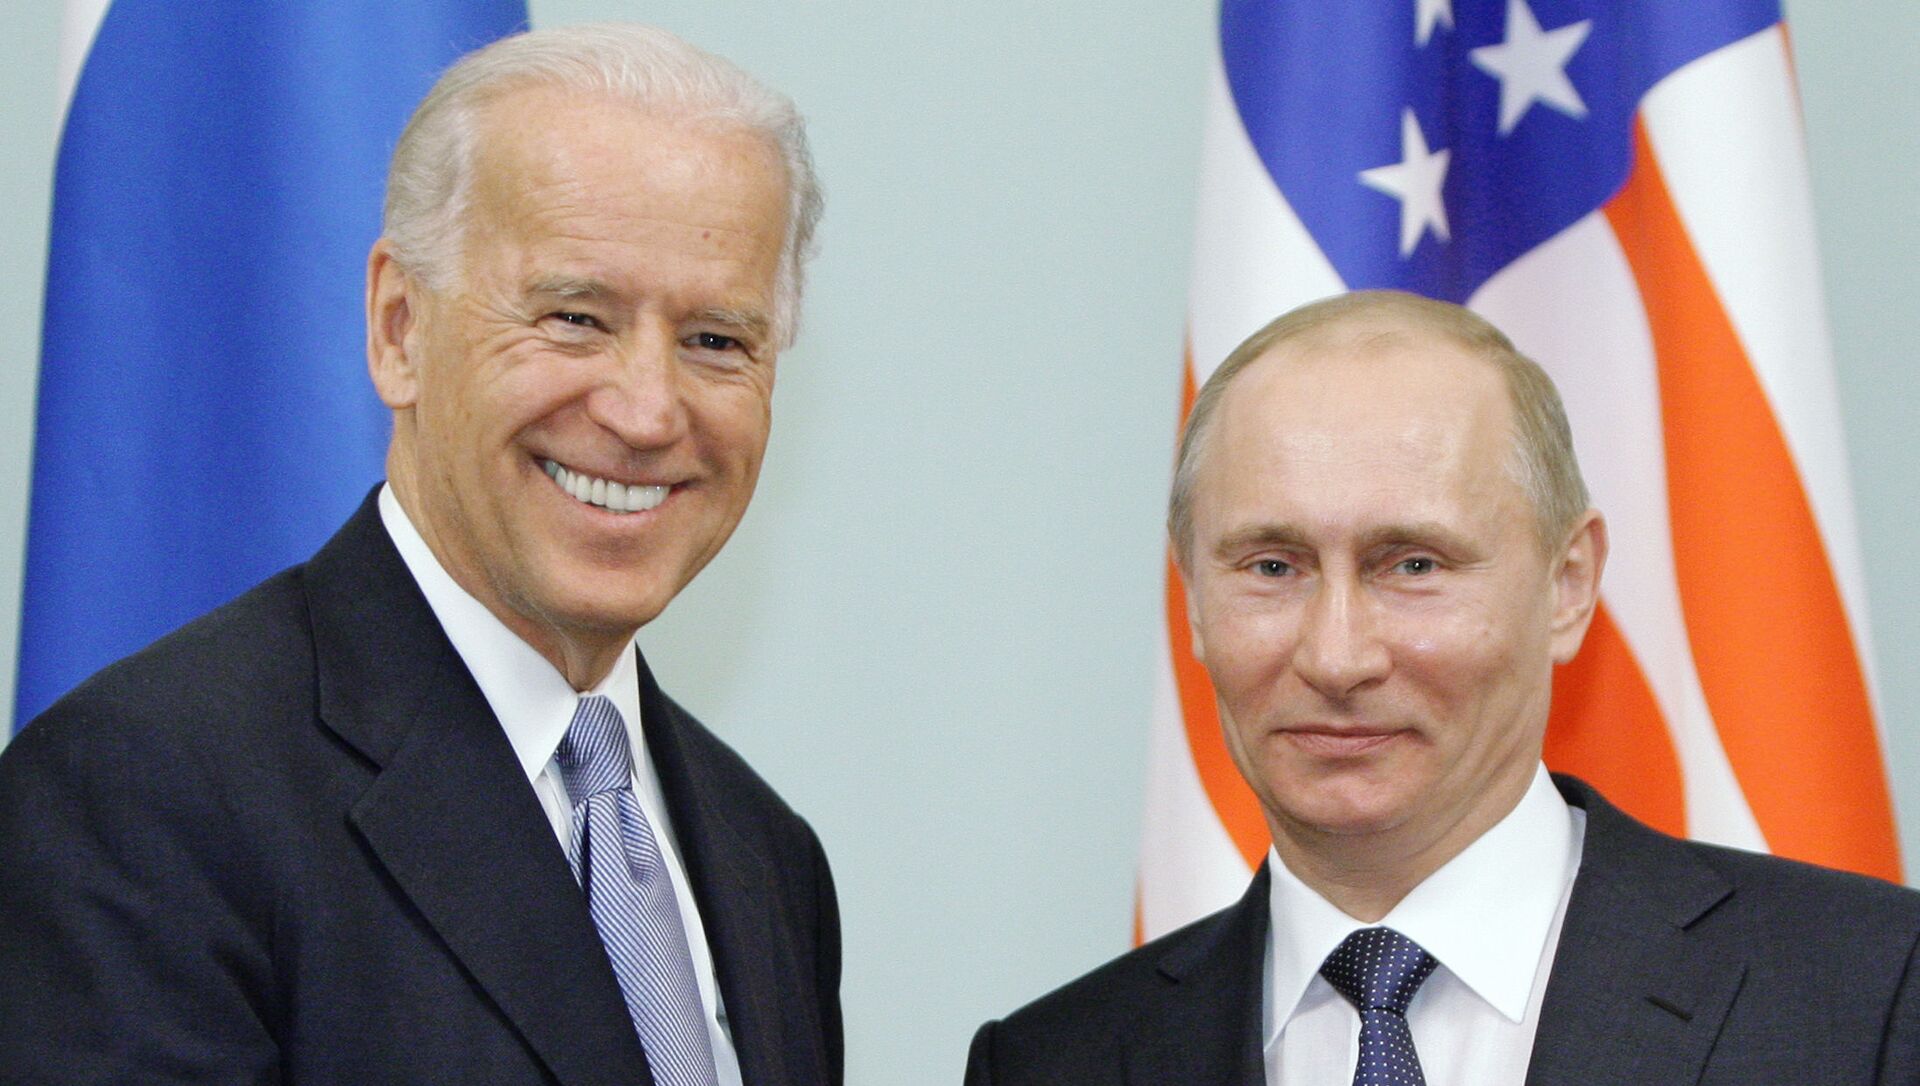 Trong bức ảnh hồ sơ ngày 10 tháng 3 năm 2011, Phó Tổng thống khi đó là Joe Biden, rời đi, bắt tay Thủ tướng Nga Vladimir Putin tại Moscow, Nga. - Sputnik Việt Nam, 1920, 14.06.2021